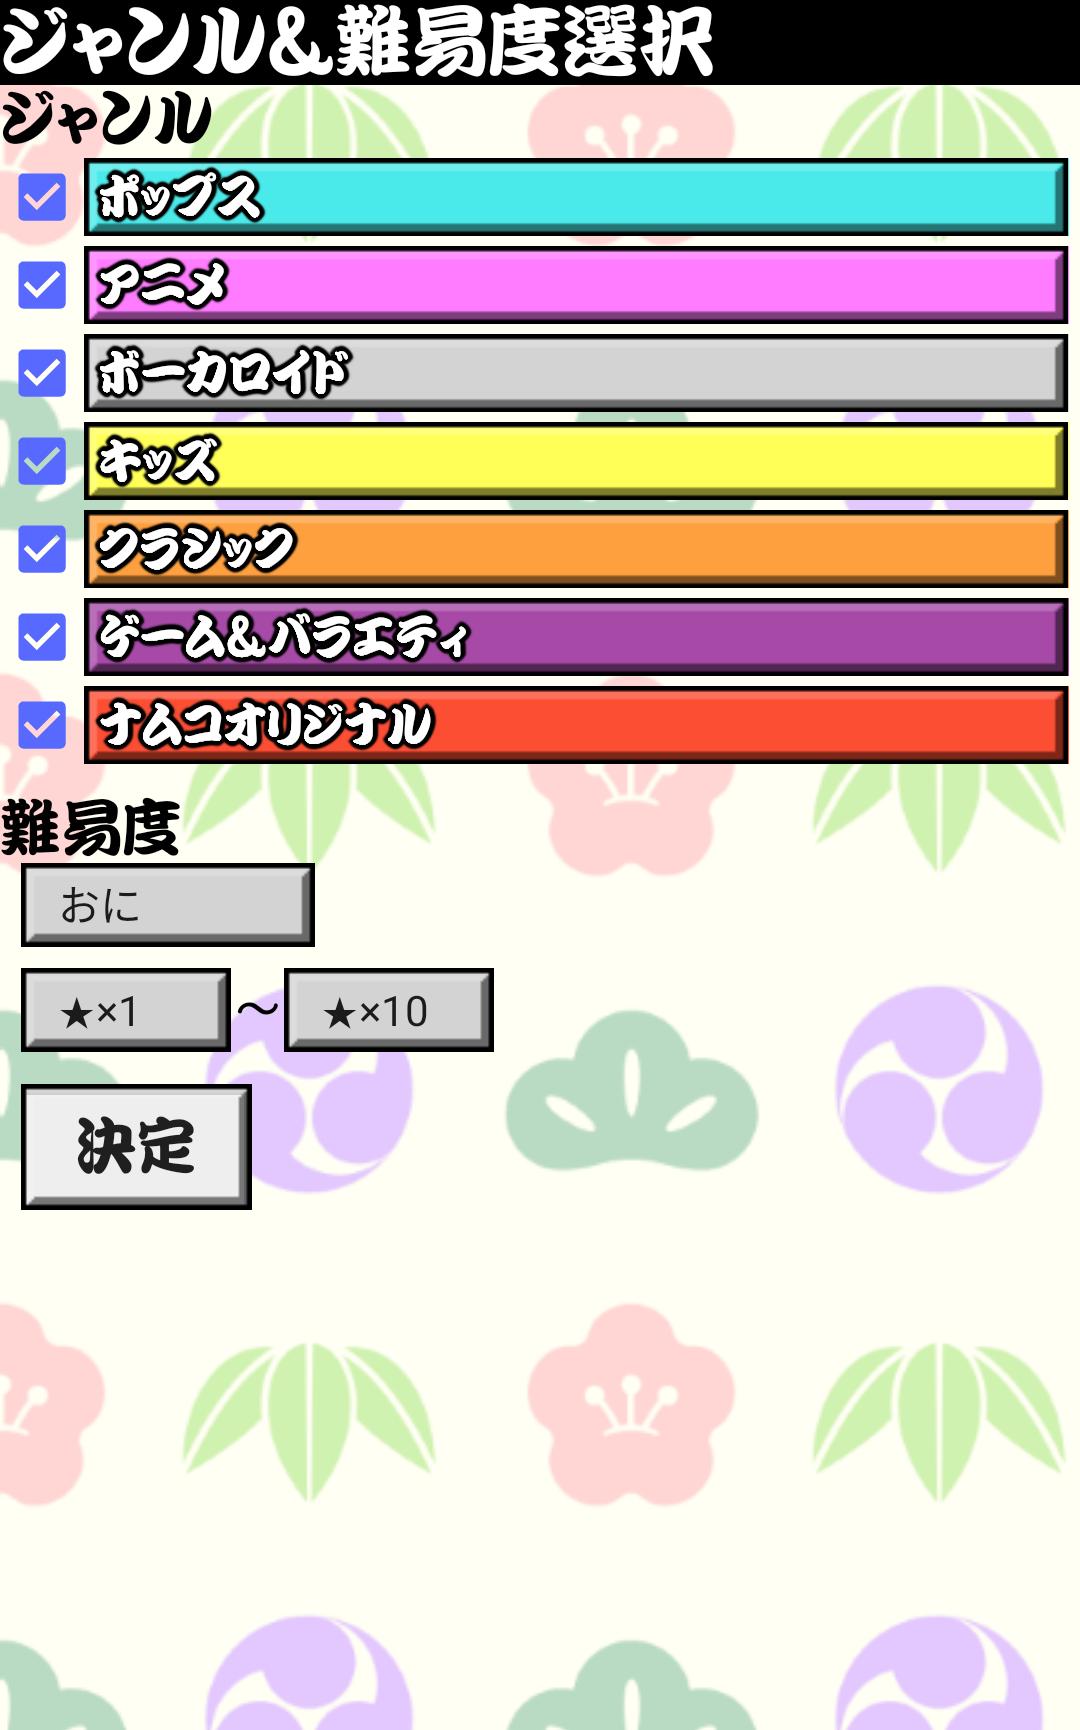 太鼓おみくじ＆雑談所ビューア2 1.63 Screenshot 6